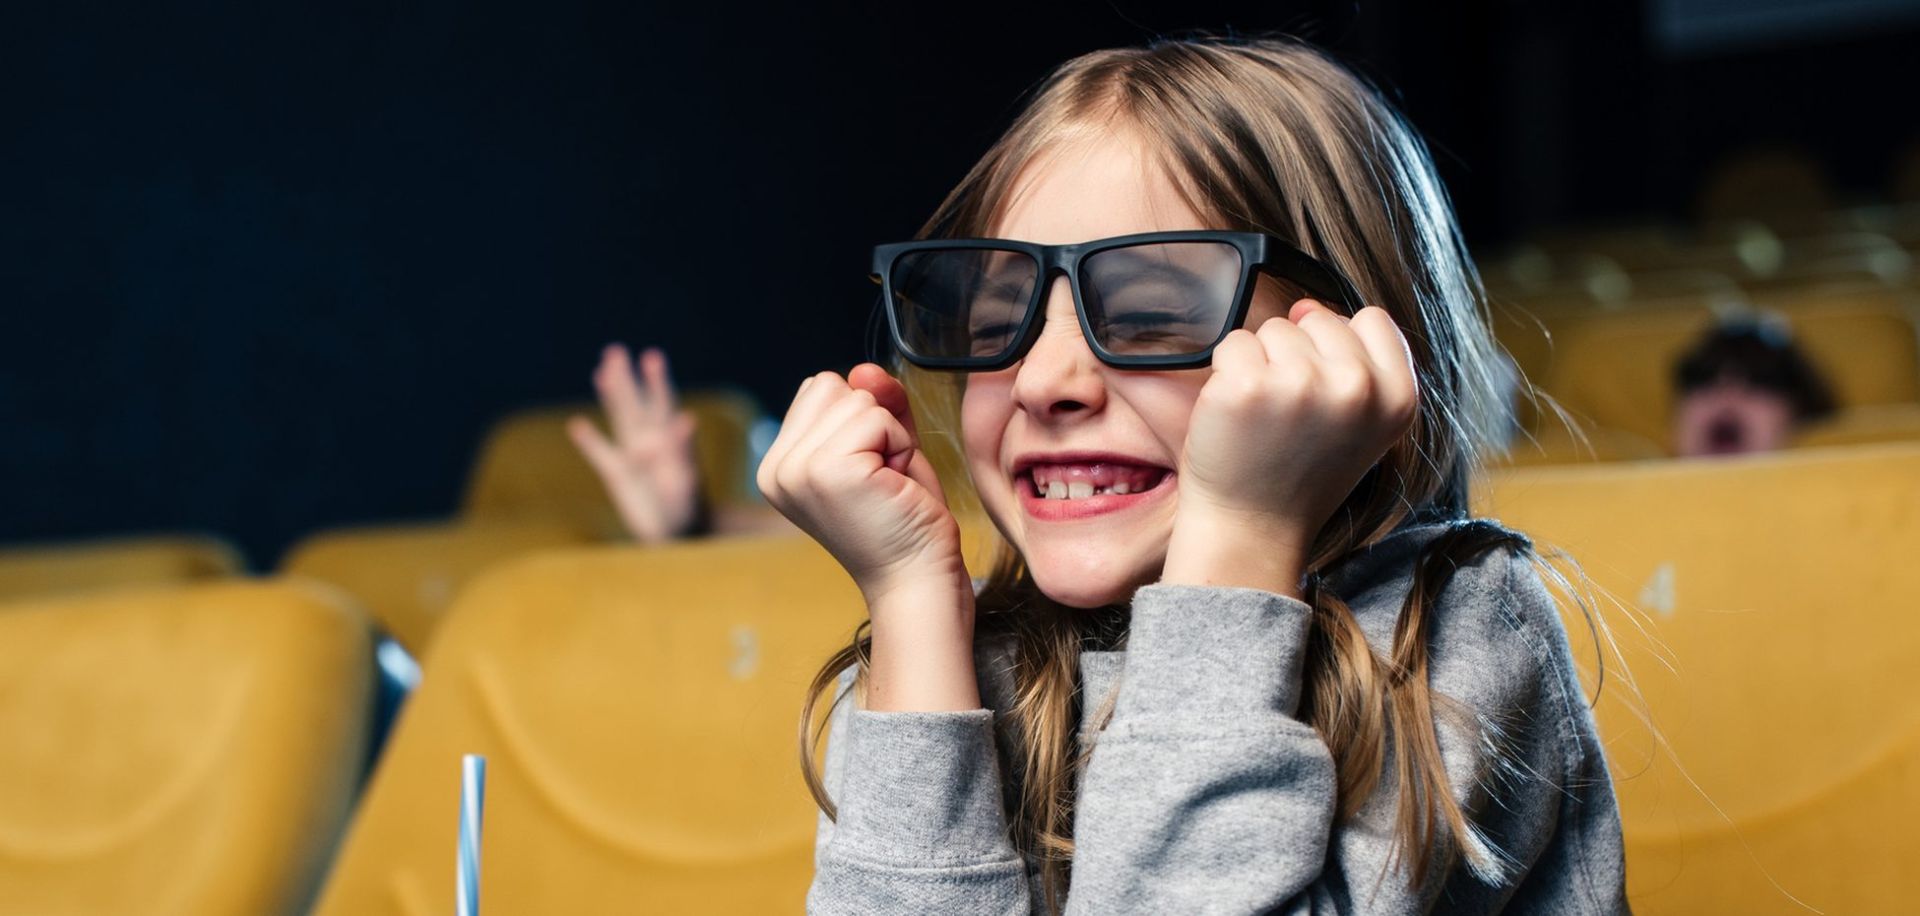 κοριτσάκι παρακουθεί ενθουσιασμένο κινηματογραφο φορωντας ειδικα γυαλιά